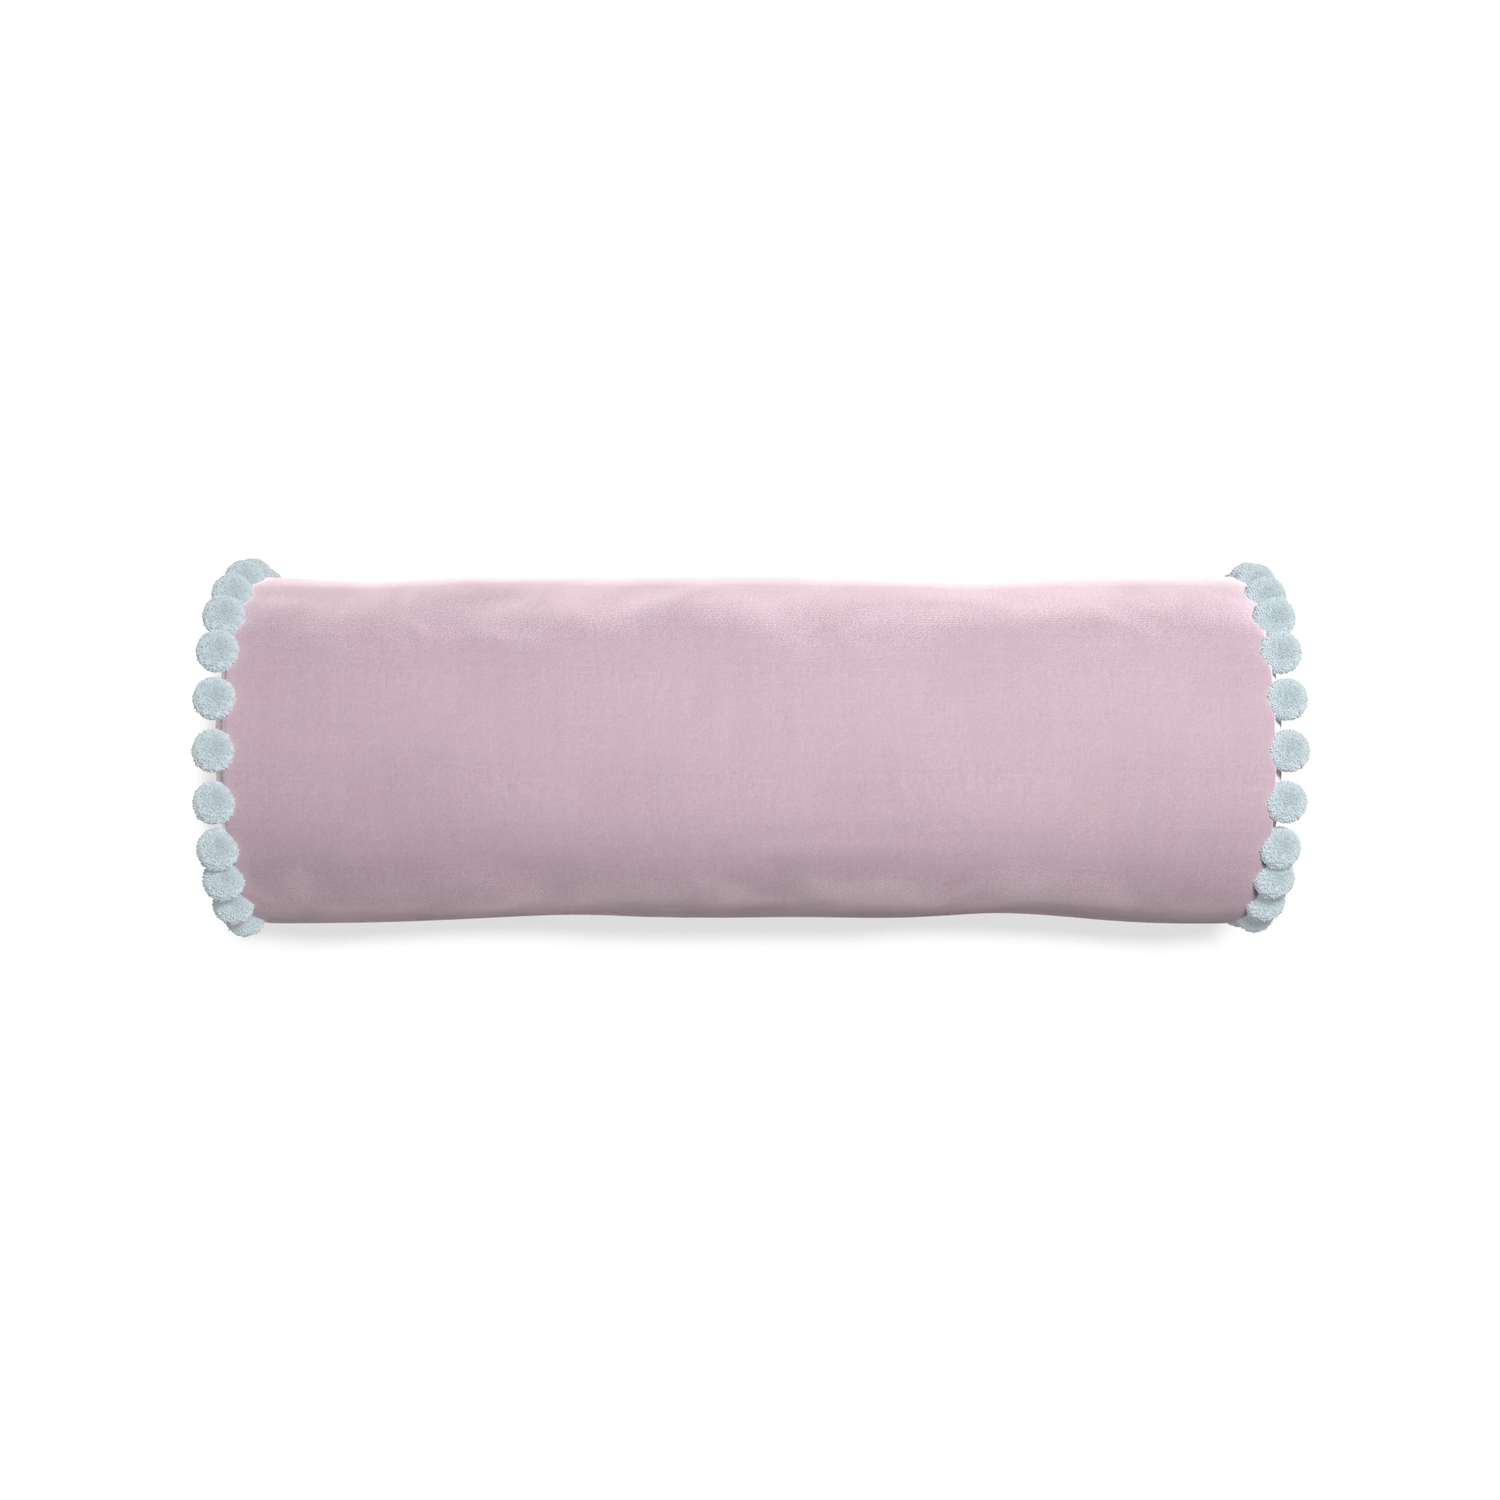 Bolster lilac velvet custom pillow with powder pom pom on white background